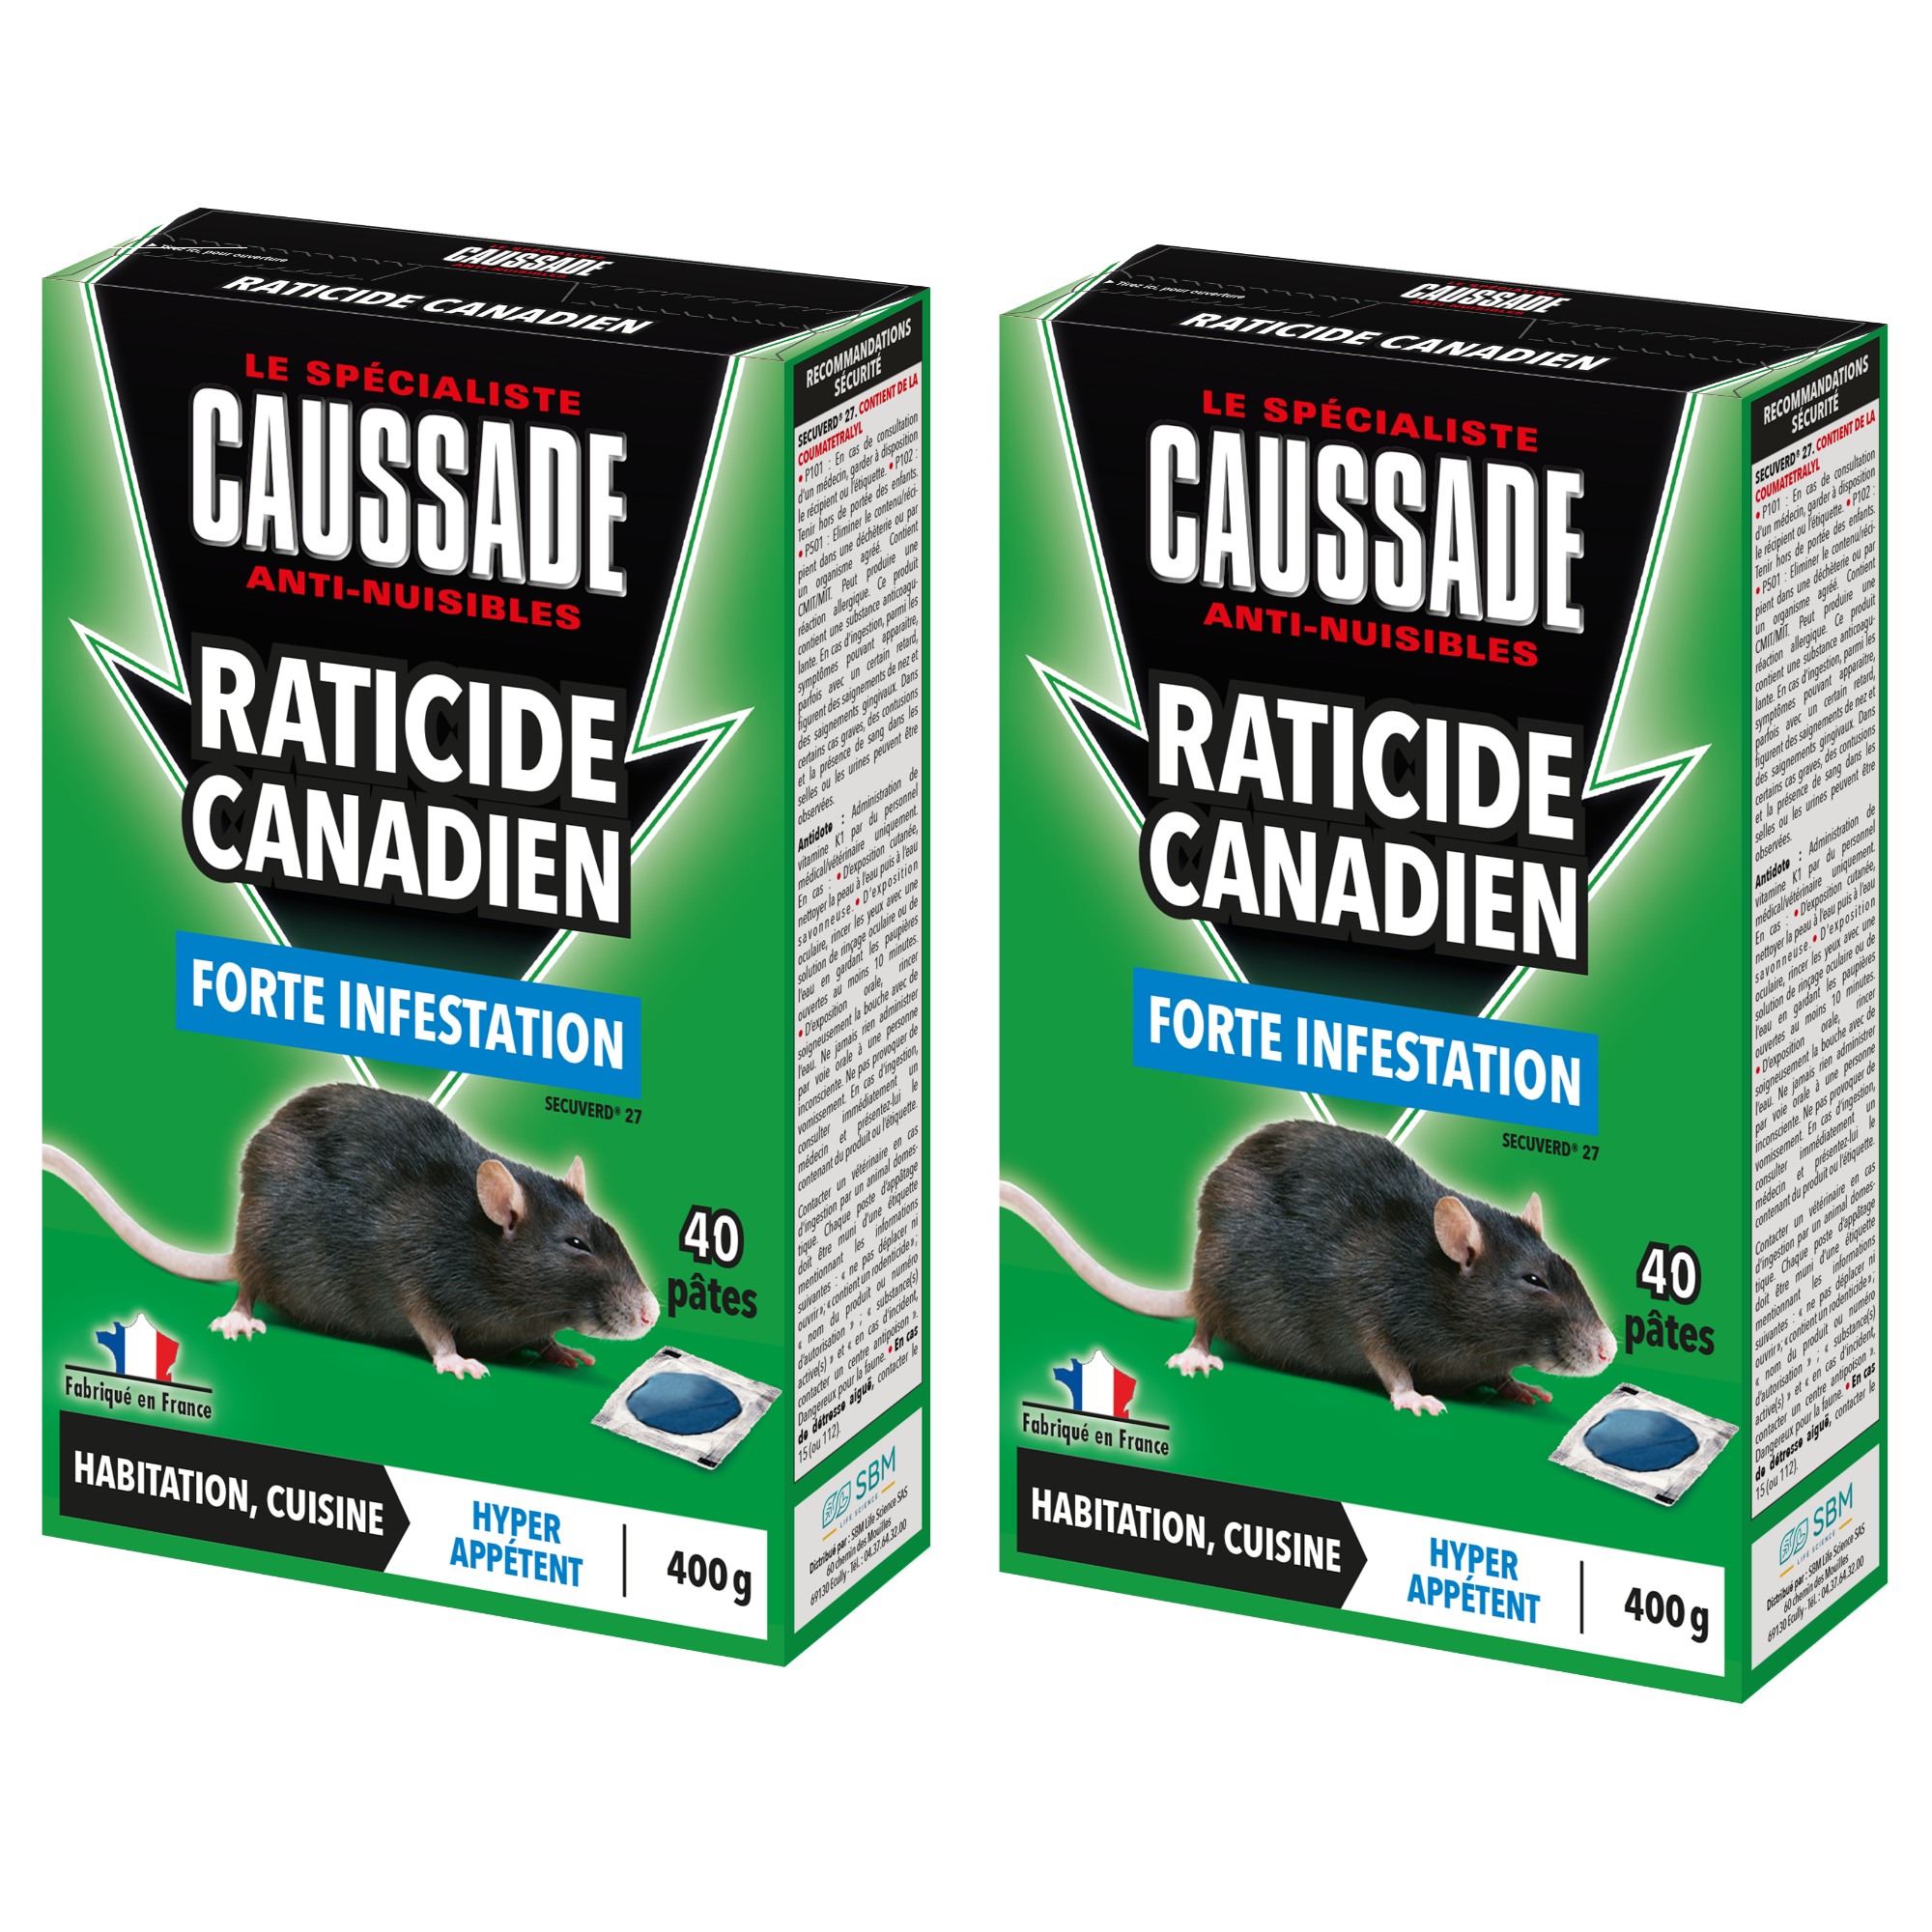 CAUSSADE CARPT400 Raticide Canadien Forte Infestation Appât Prêt à